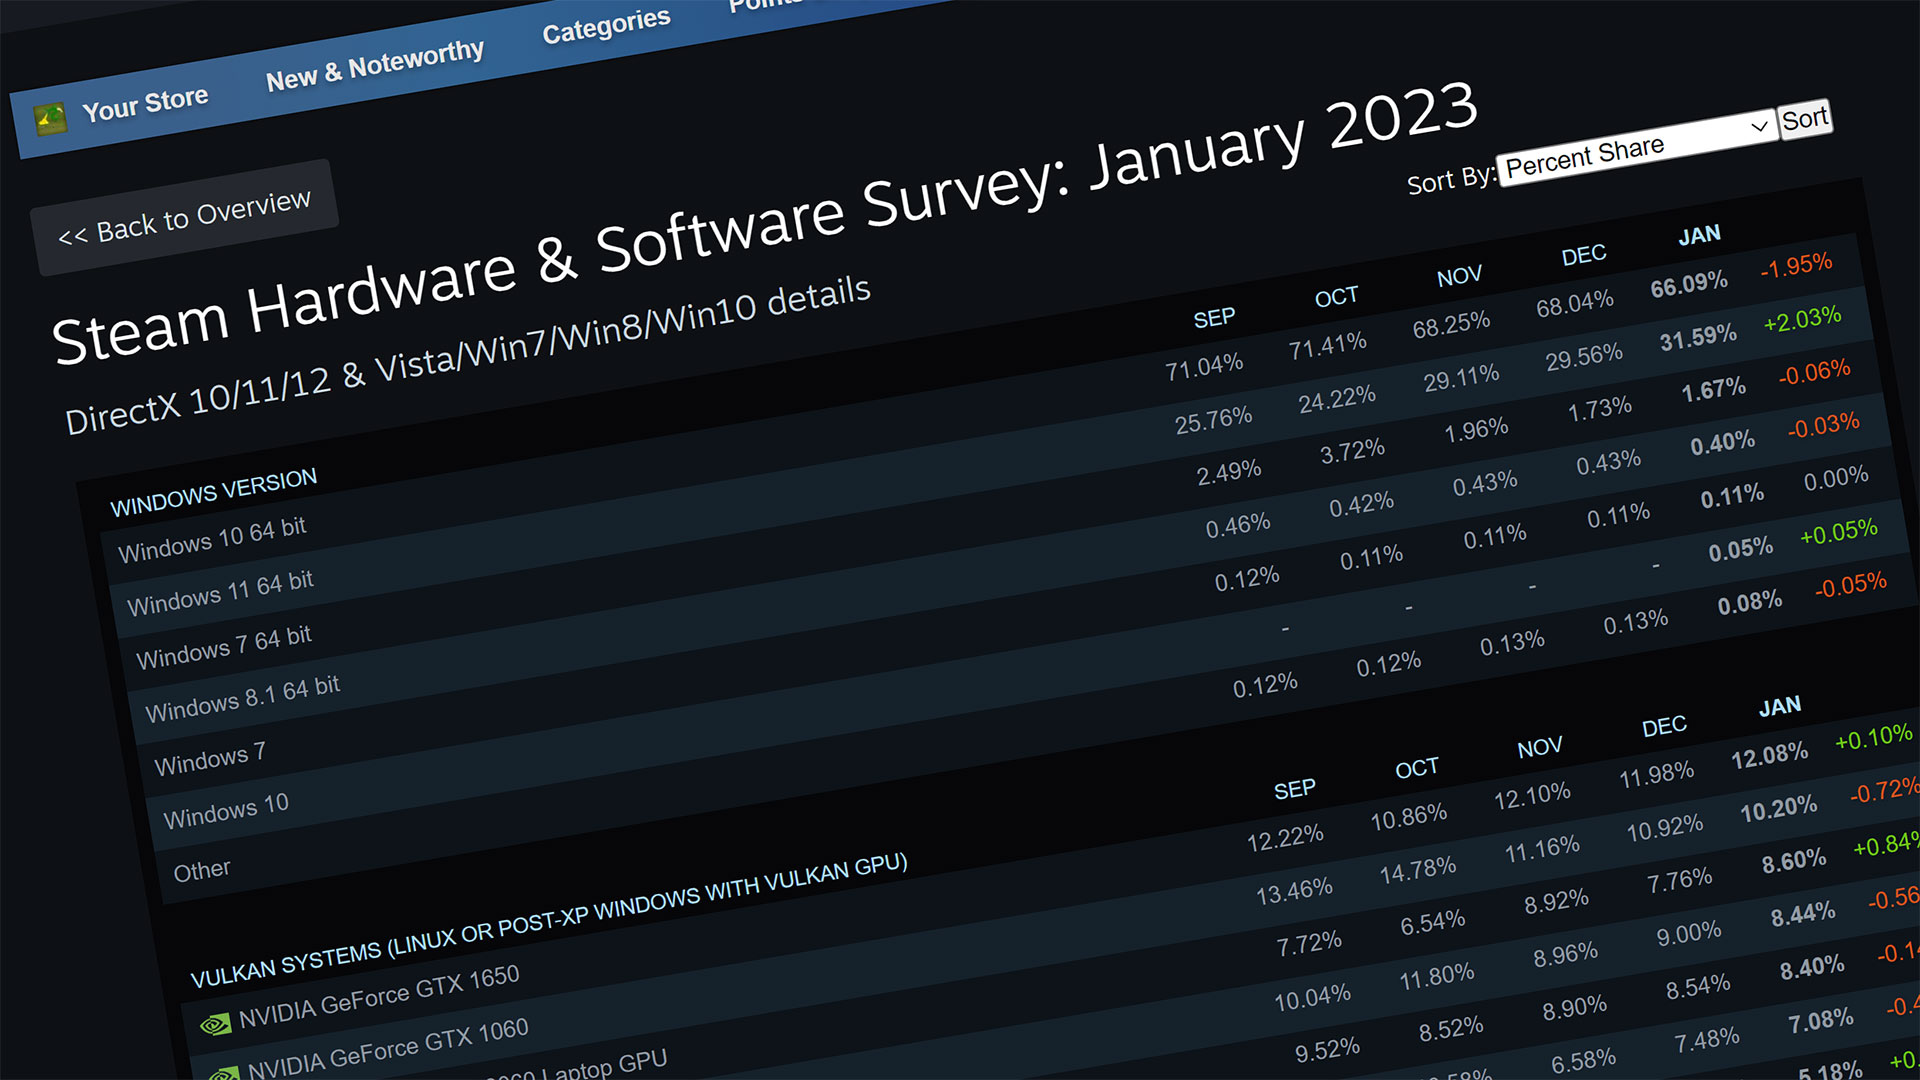 Steam Hardware & Software Survey